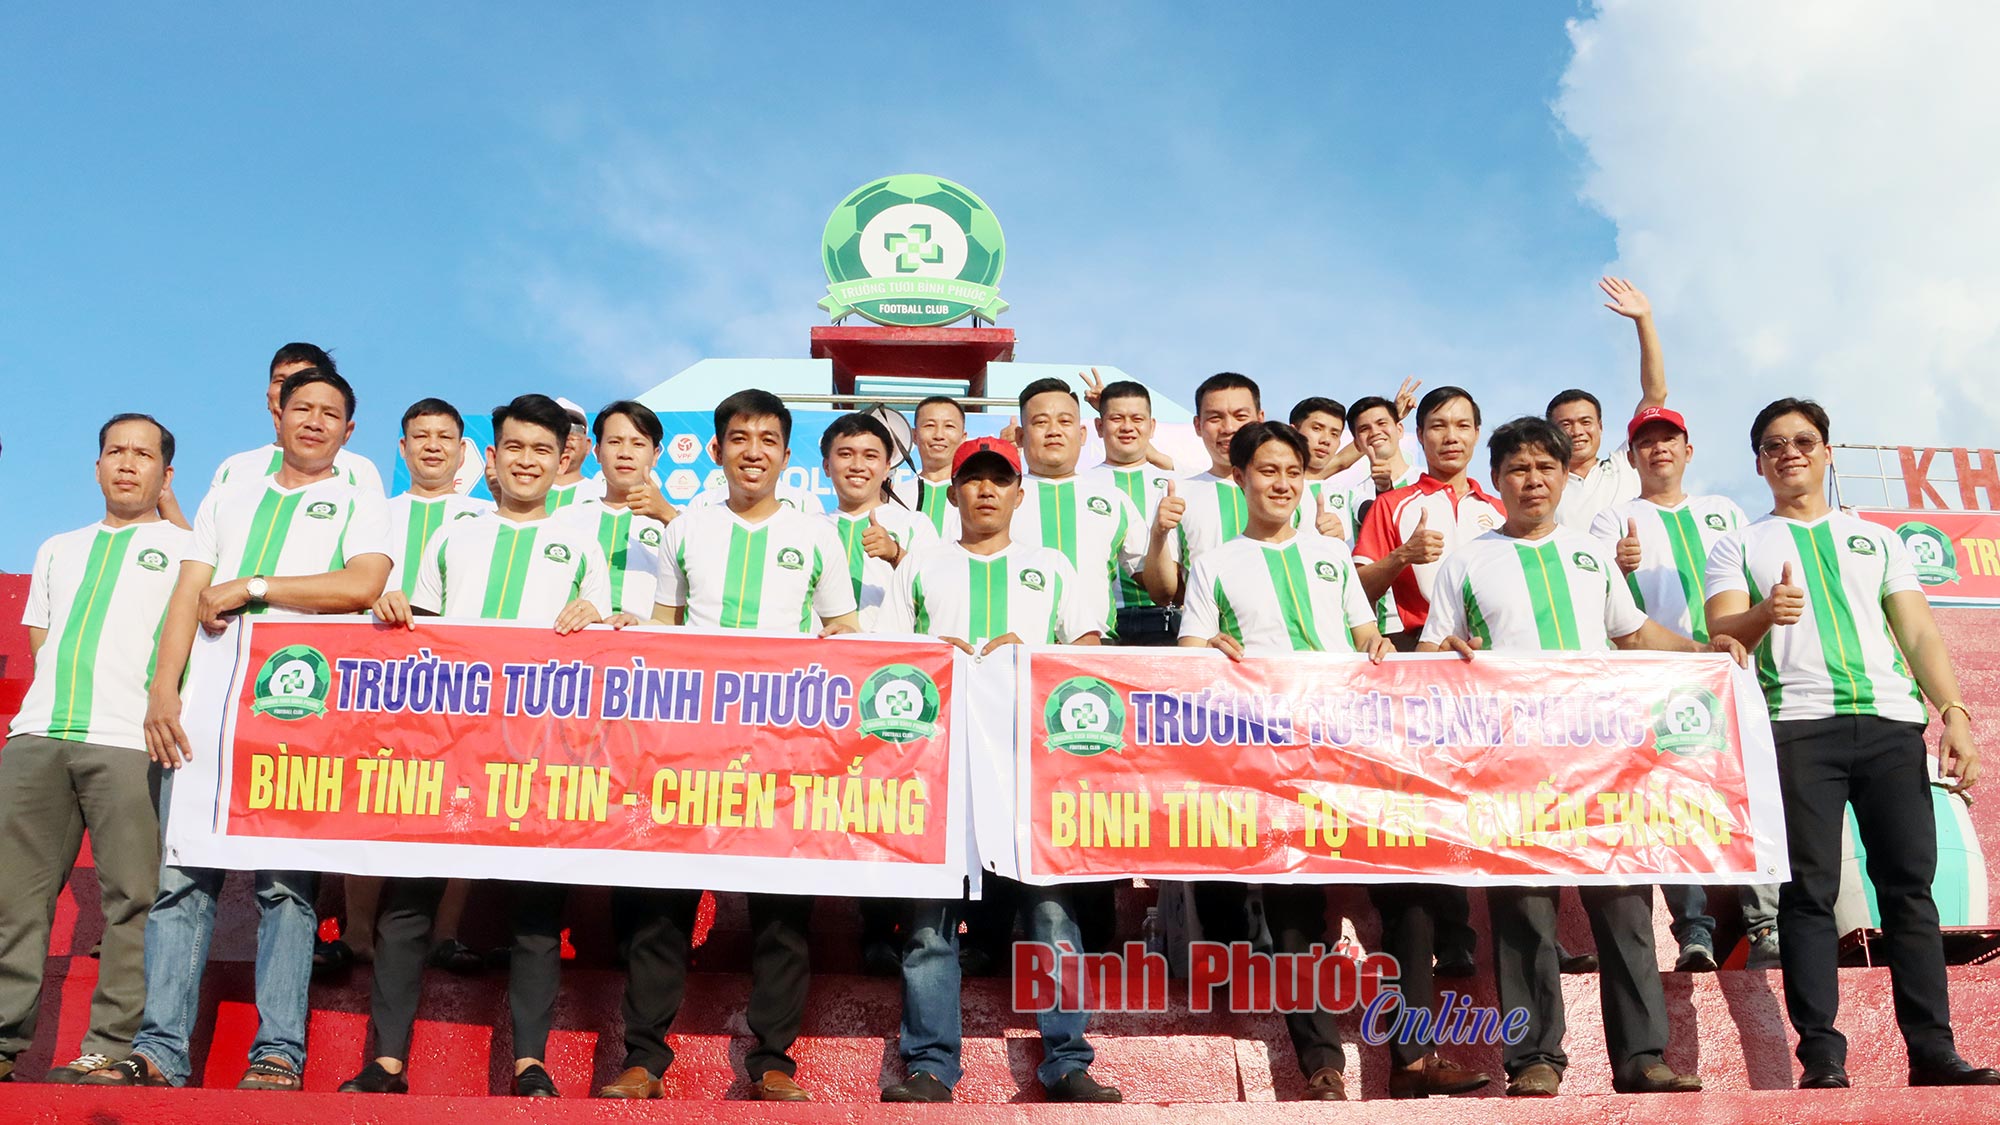 Khí thế cổ động trên sân nhà của người hâm mộ bóng đá Bình Phước